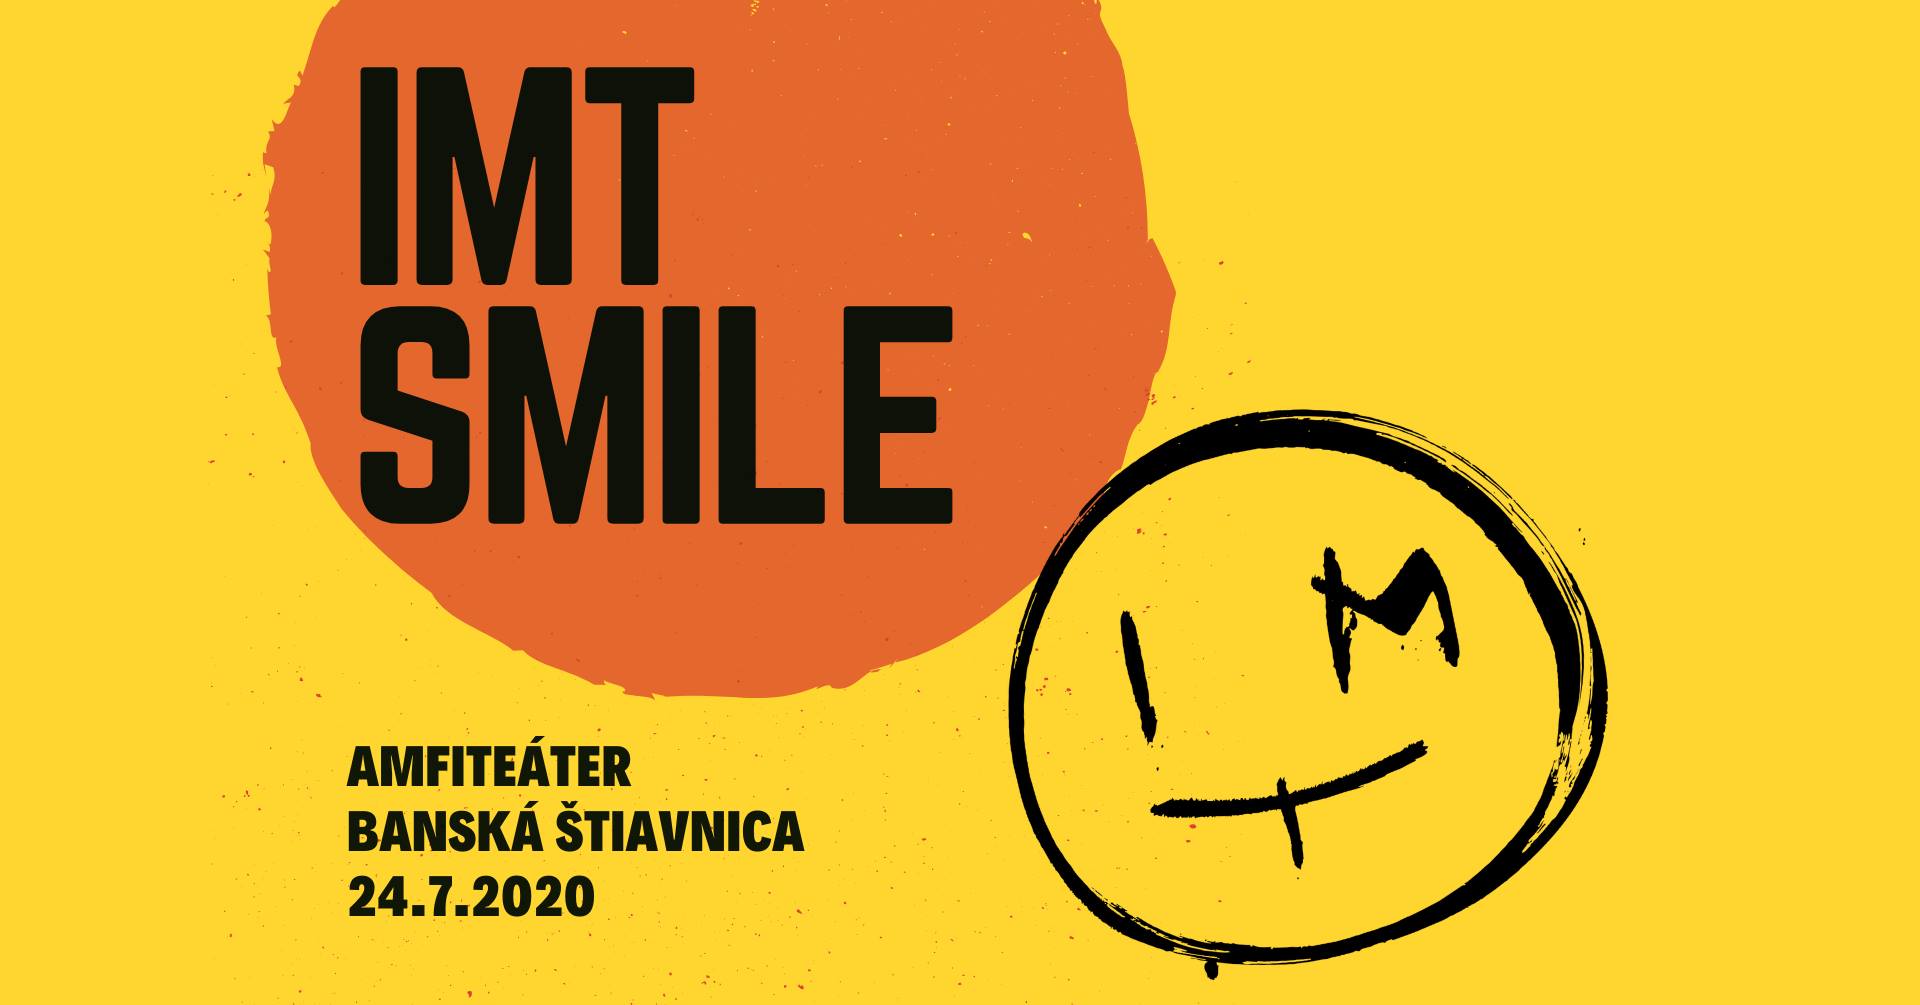 IMT SMILE - Banská Štiavnica - Amfiteáter 24/7